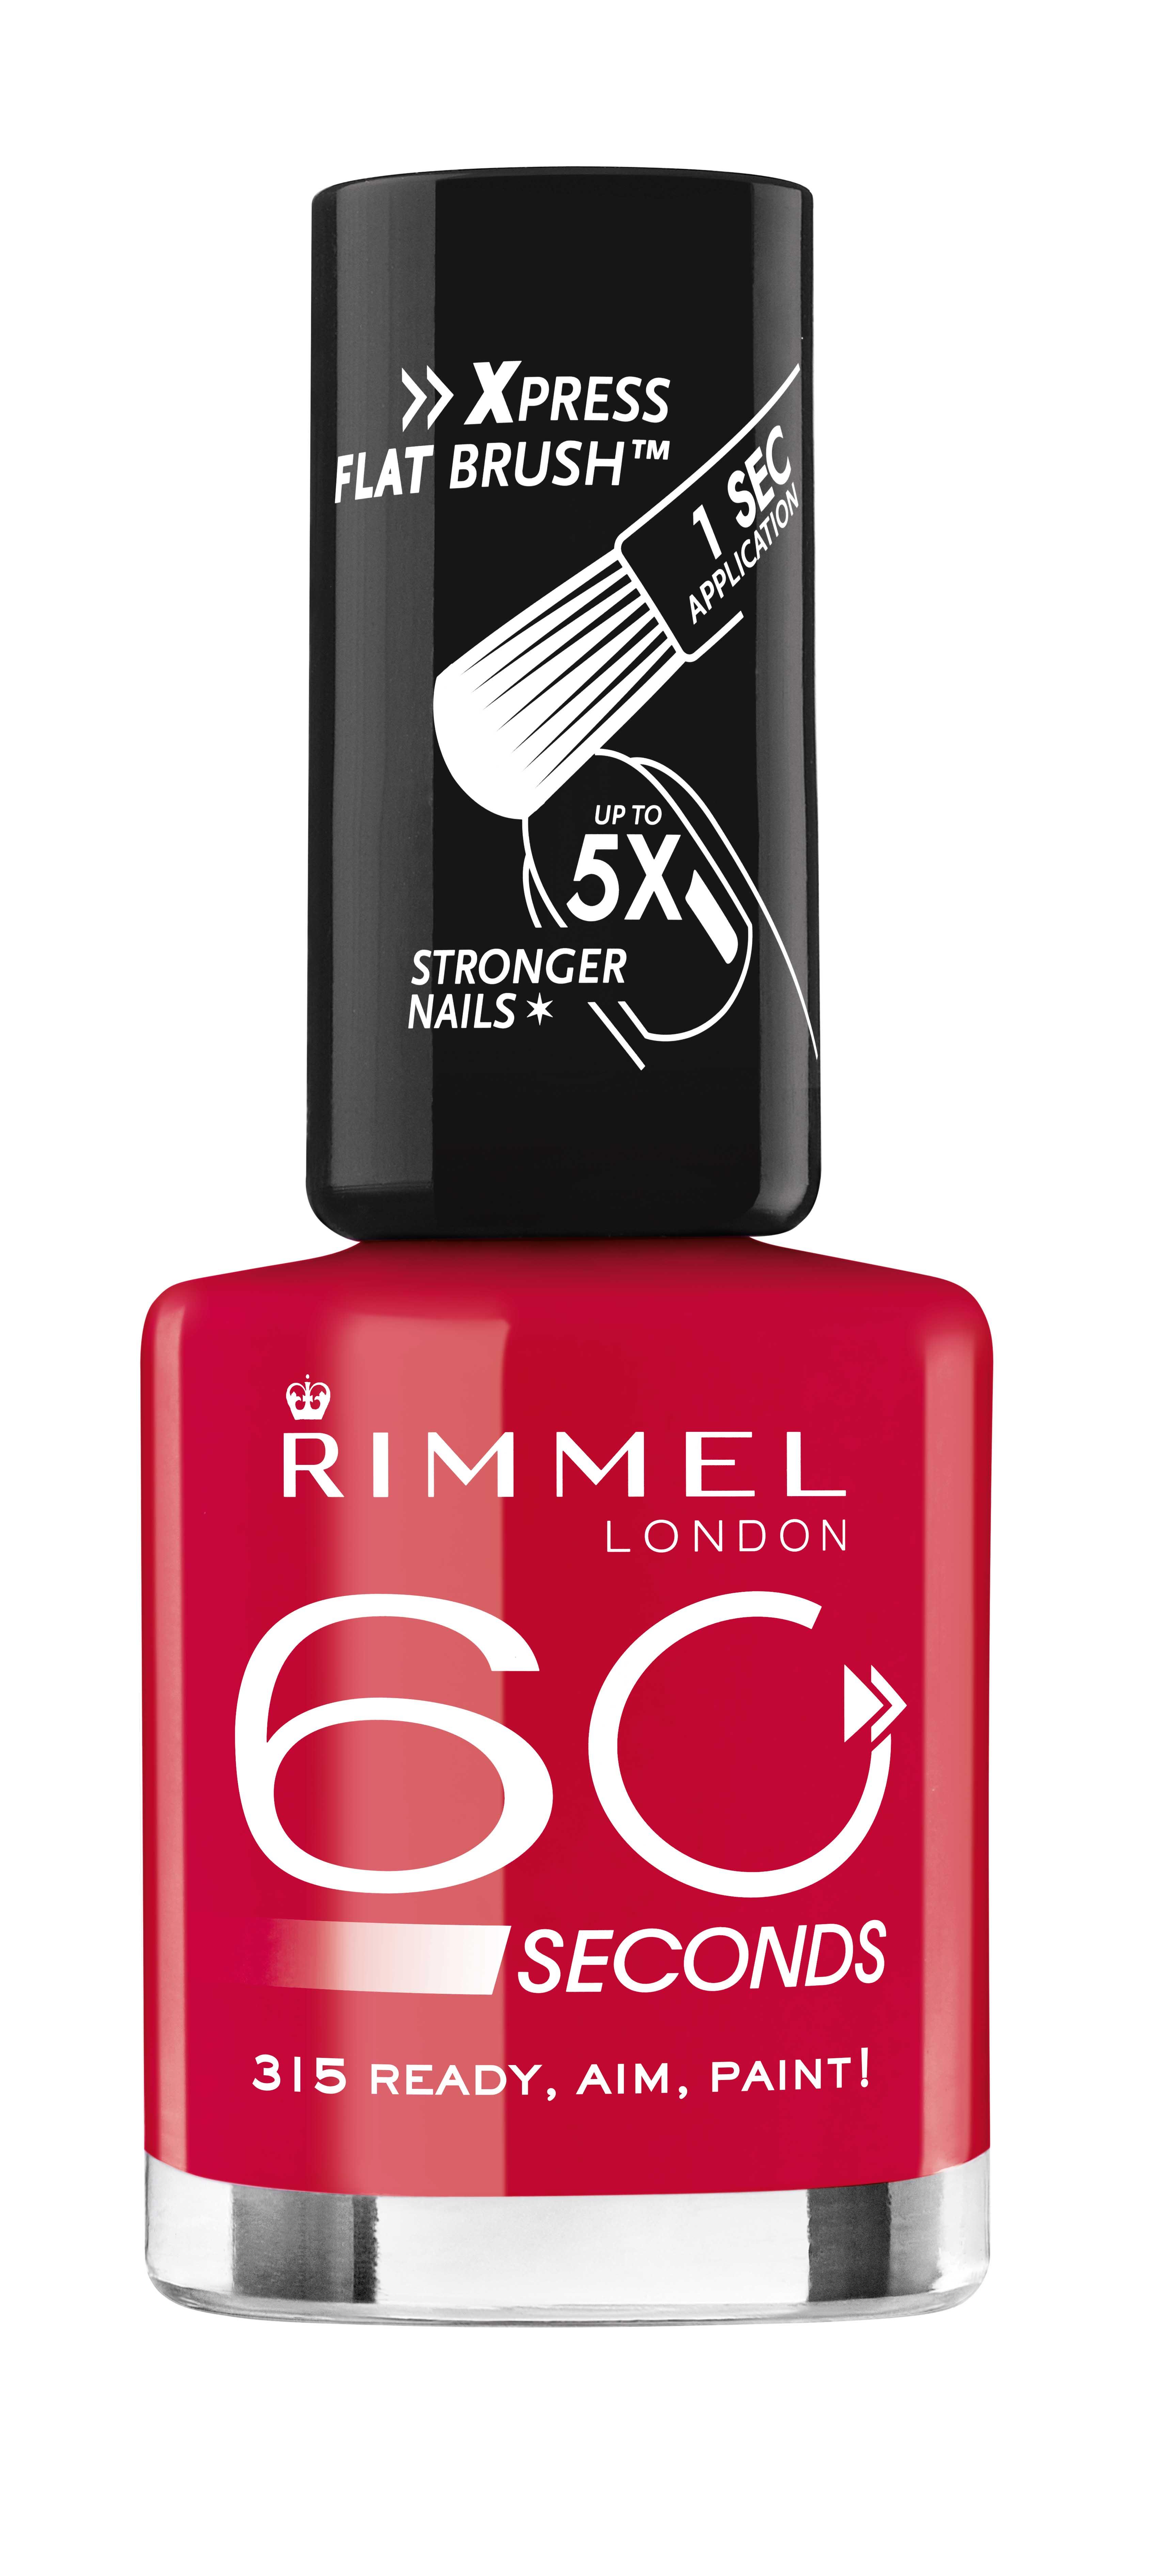 Rimmel 60 Seconds Ready Aim, Paint - €4.99